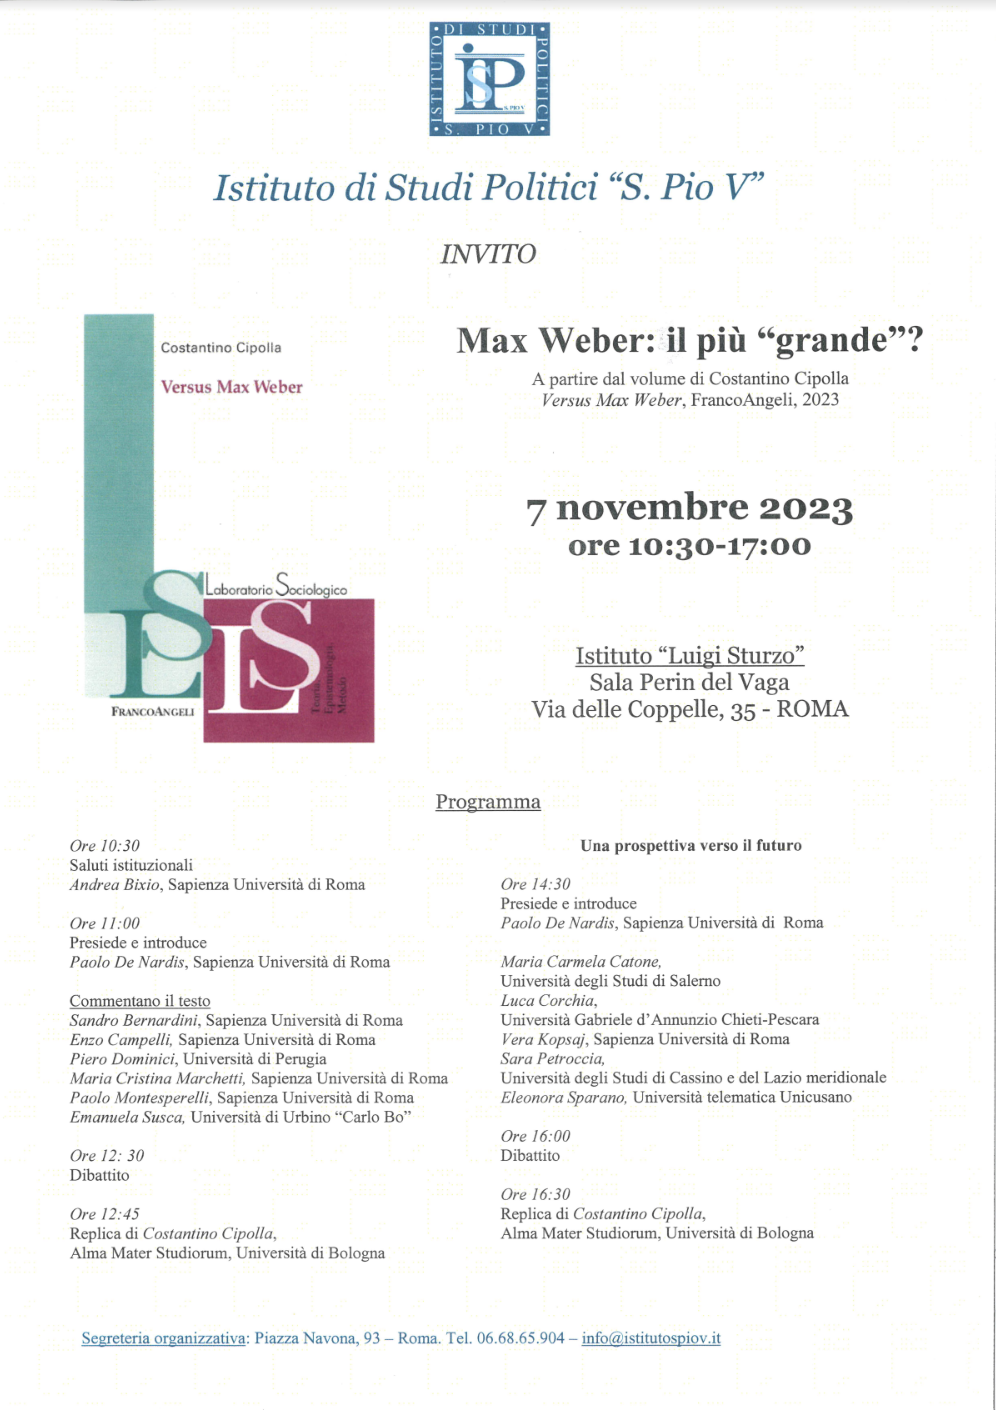 Conferenza di presentazione del volume “Versus Max Weber”